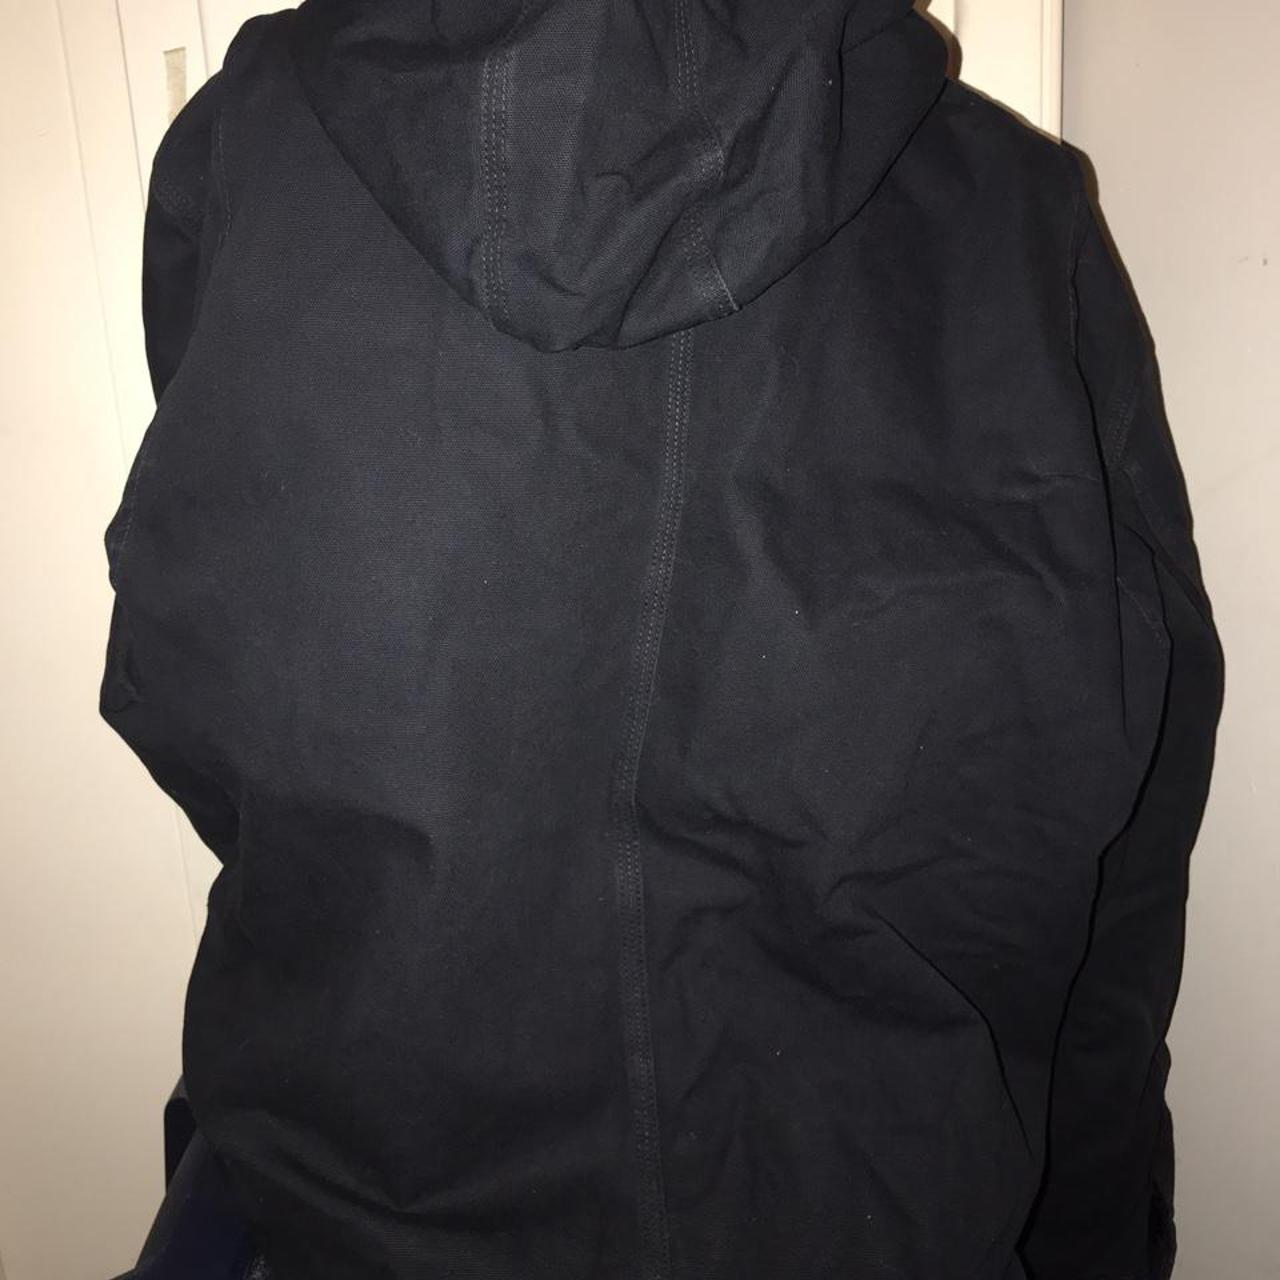 Vintage Carhartt Black Hooded Jacket. This is an... - Depop